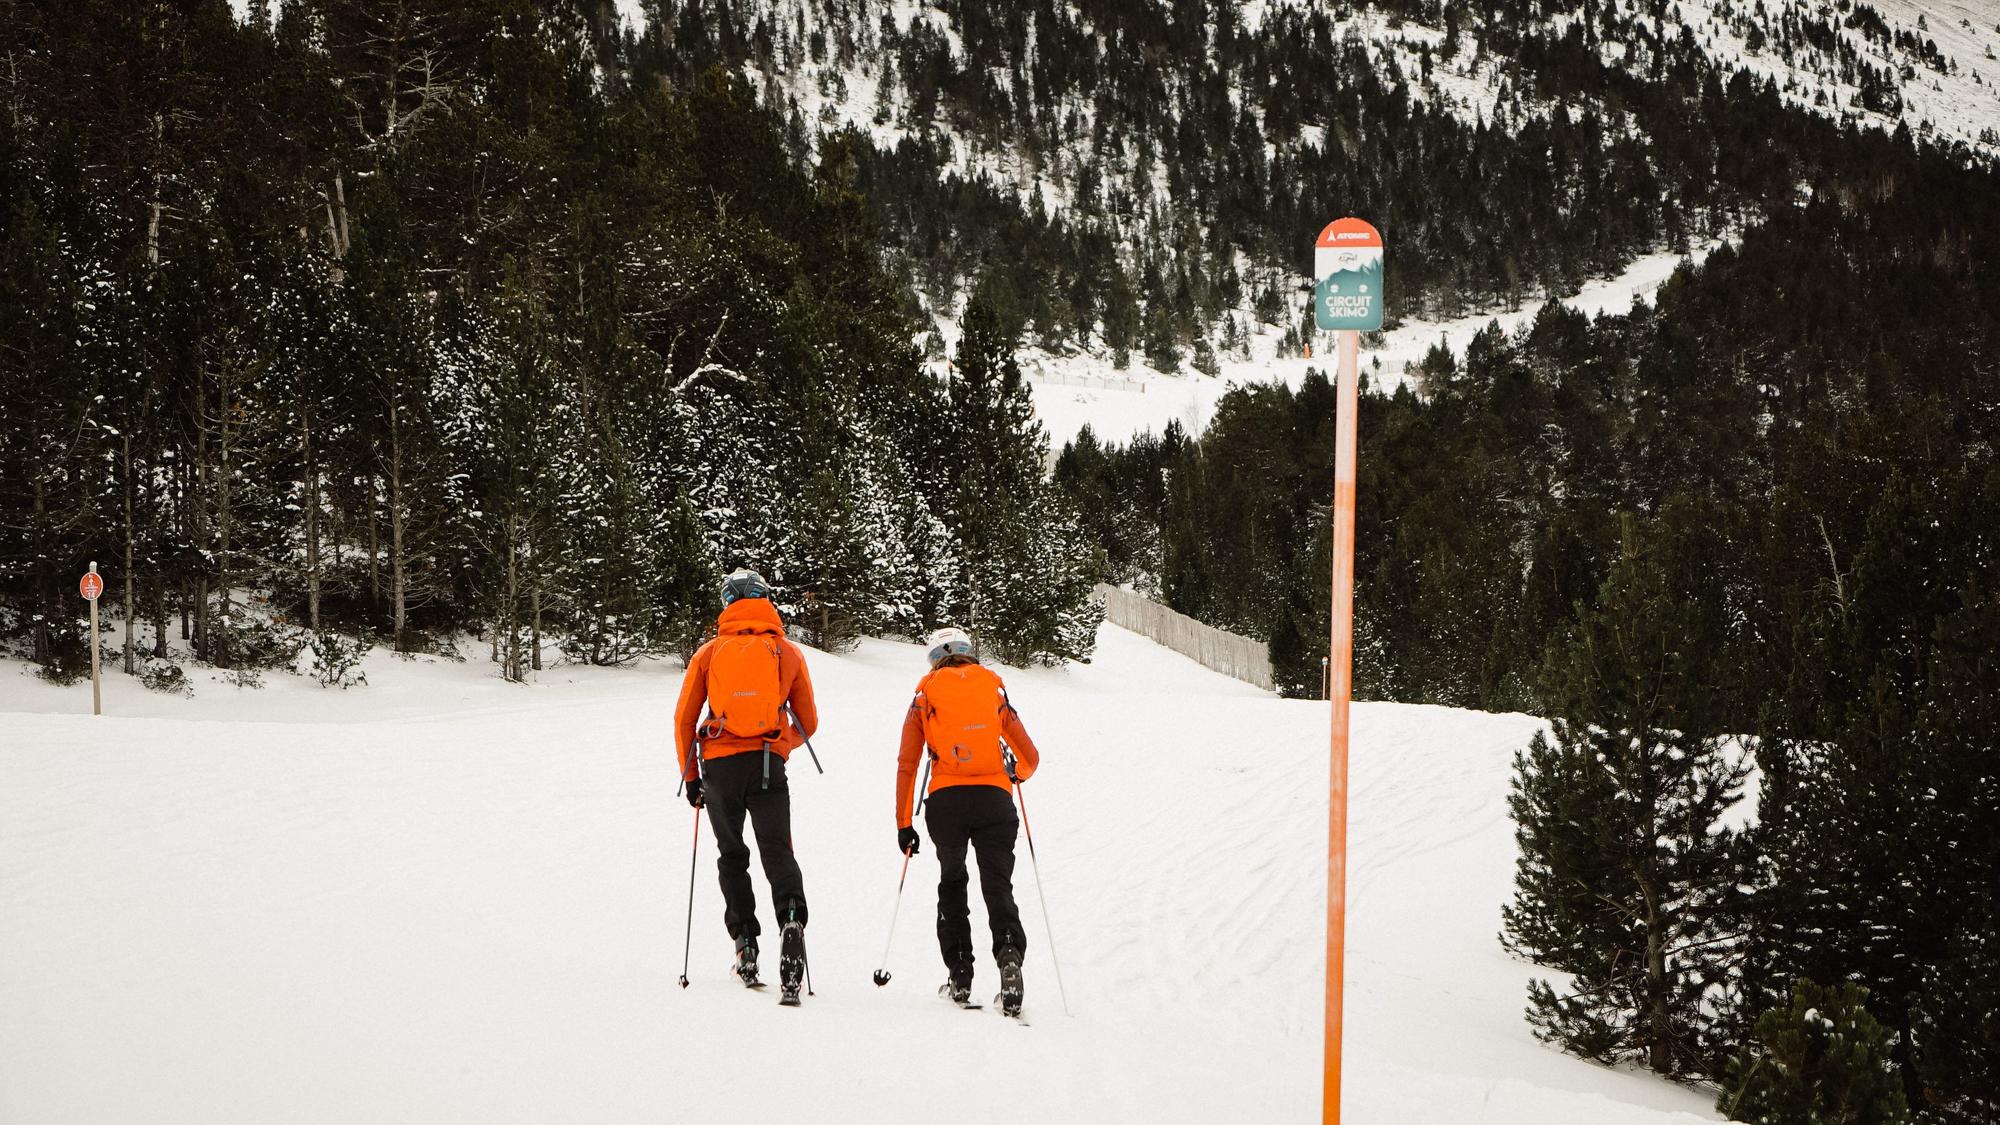 Esquí de montaña, raquetas y esquí de fondo según datos de Strava, triunfaron en Navidad